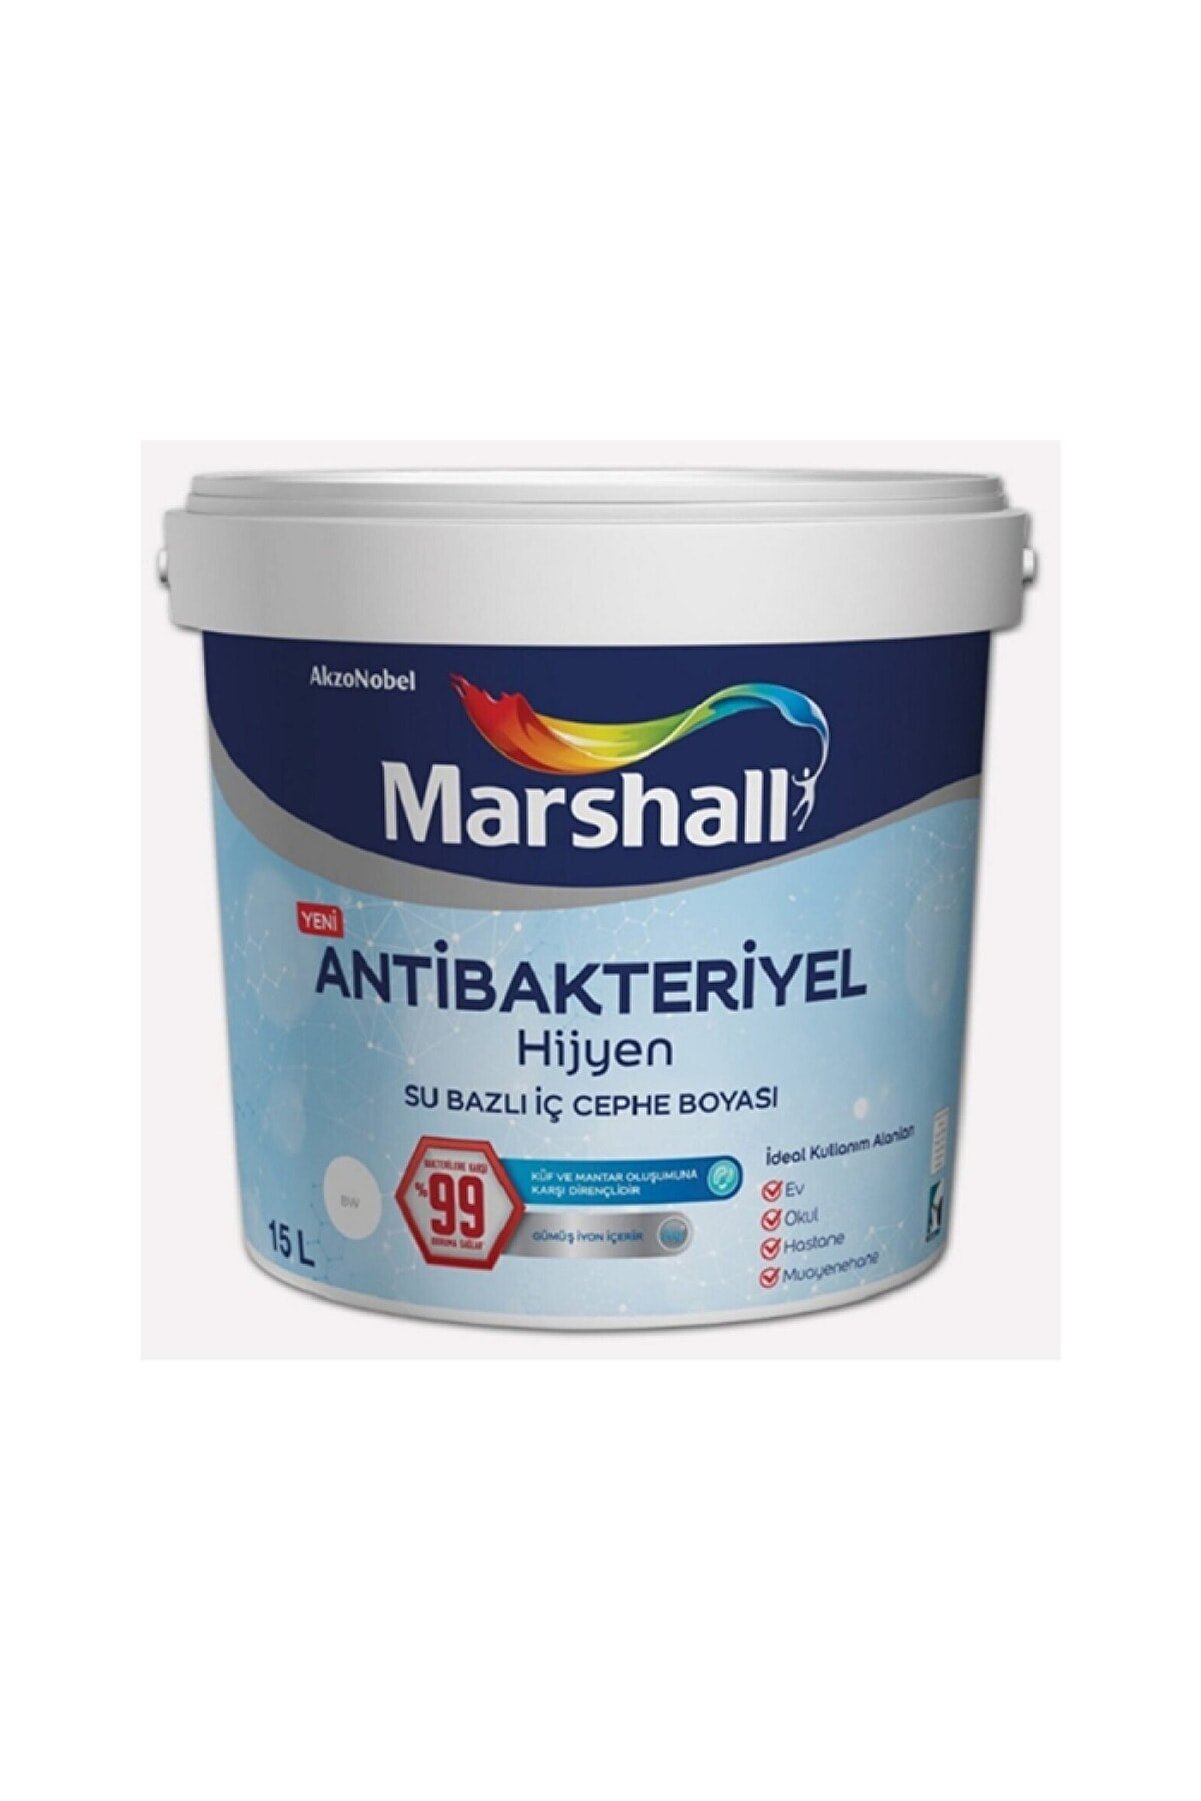 Marshall Antibakteriyel Hijyen Silinebilir Iç Cephe Boyası 17,5 Kg